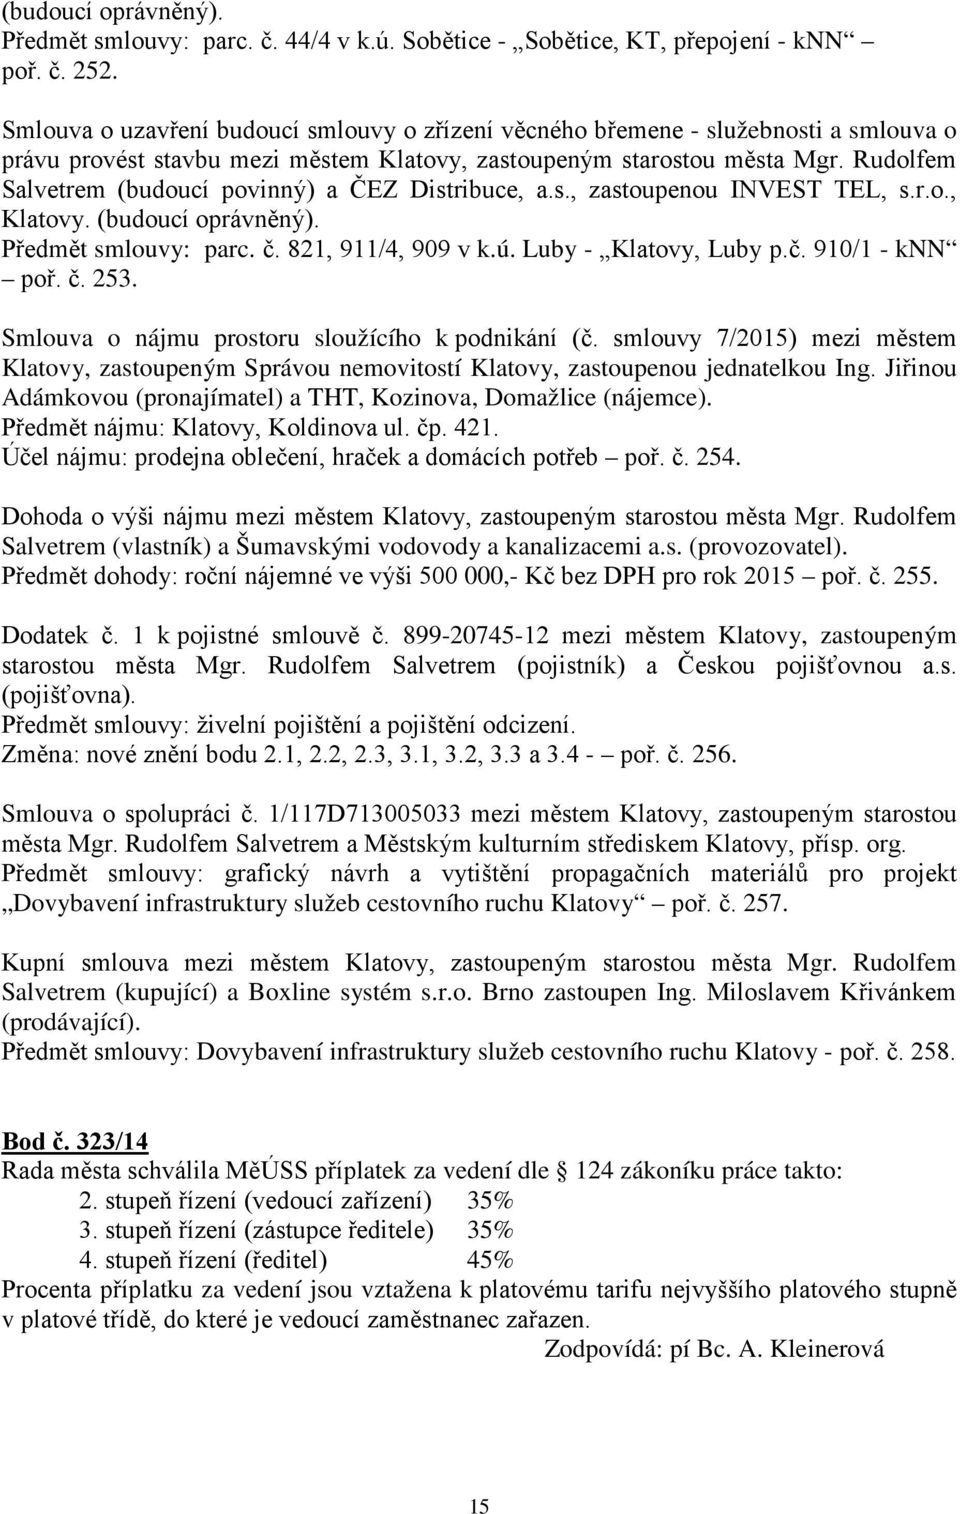 Rudolfem Salvetrem (budoucí povinný) a ČEZ Distribuce, a.s., zastoupenou INVEST TEL, s.r.o., Klatovy. (budoucí oprávněný). Předmět smlouvy: parc. č. 821, 911/4, 909 v k.ú. Luby - Klatovy, Luby p.č. 910/1 - knn poř.